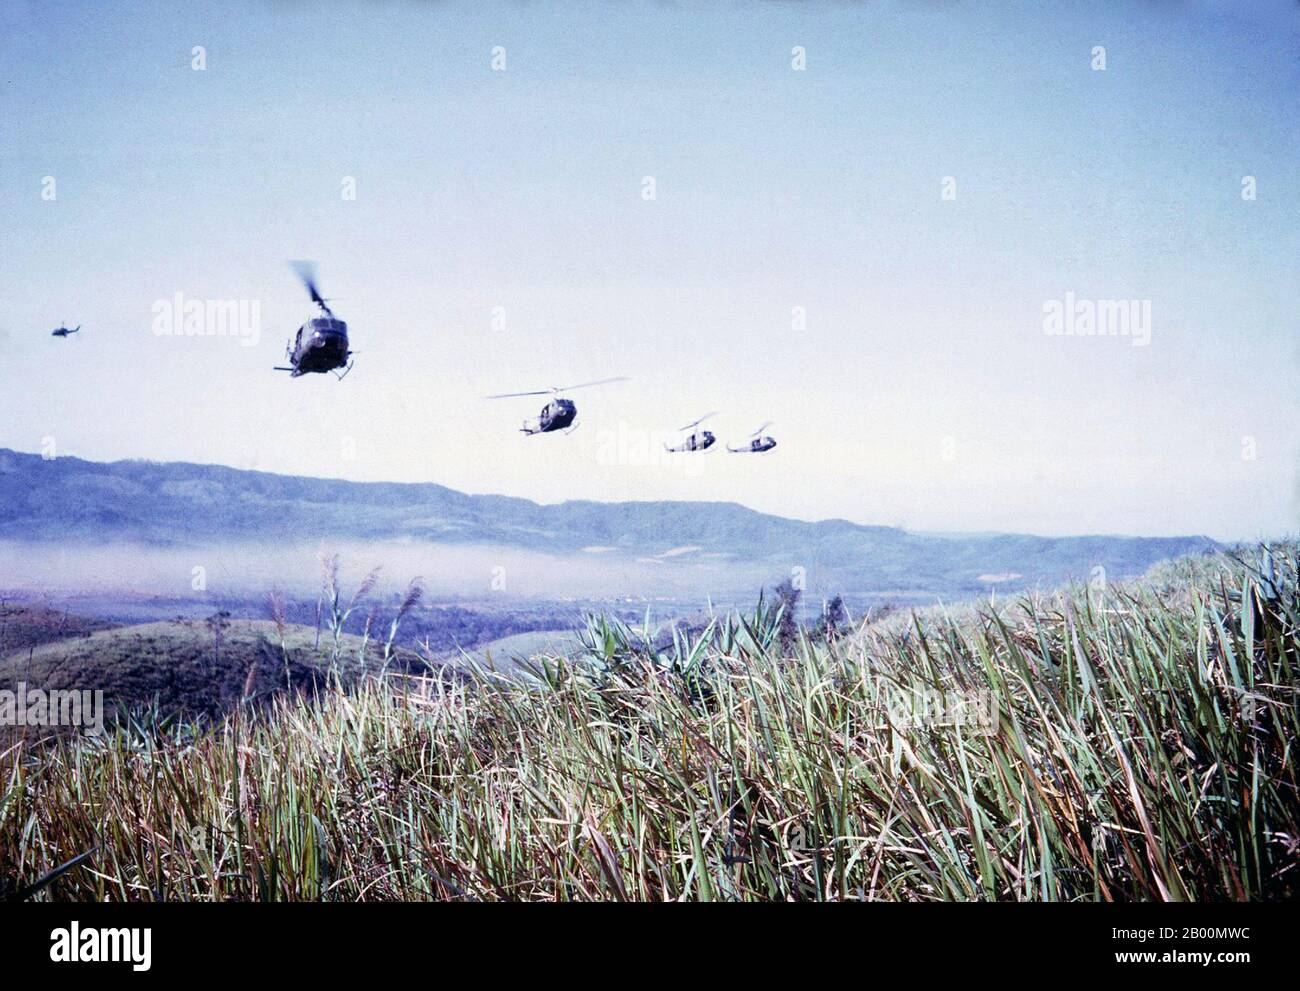 Vietnam: DES hélicoptères US Huey approchent de la zone d'atterrissage à Dak to, novembre 1967. La bataille de Đắk Tô a été une série d'engagements majeurs de la guerre du Vietnam qui ont eu lieu entre le 3 novembre et le 22 novembre 1967, dans la province de Kontum, dans les Hautes-terres centrales de la République du Vietnam (Sud Vietnam). L'action de Đắk Tô a été l'une des initiatives offensives de l'Armée populaire du Vietnam (PAVN) qui ont commencé au cours de la deuxième moitié de l'année. Les batailles qui ont éclaté sur les masses de colline au sud et au sud-est de Đắk Tô sont devenues quelques-unes des batailles les plus âprées et sanglantes de la guerre du Vietnam. Banque D'Images